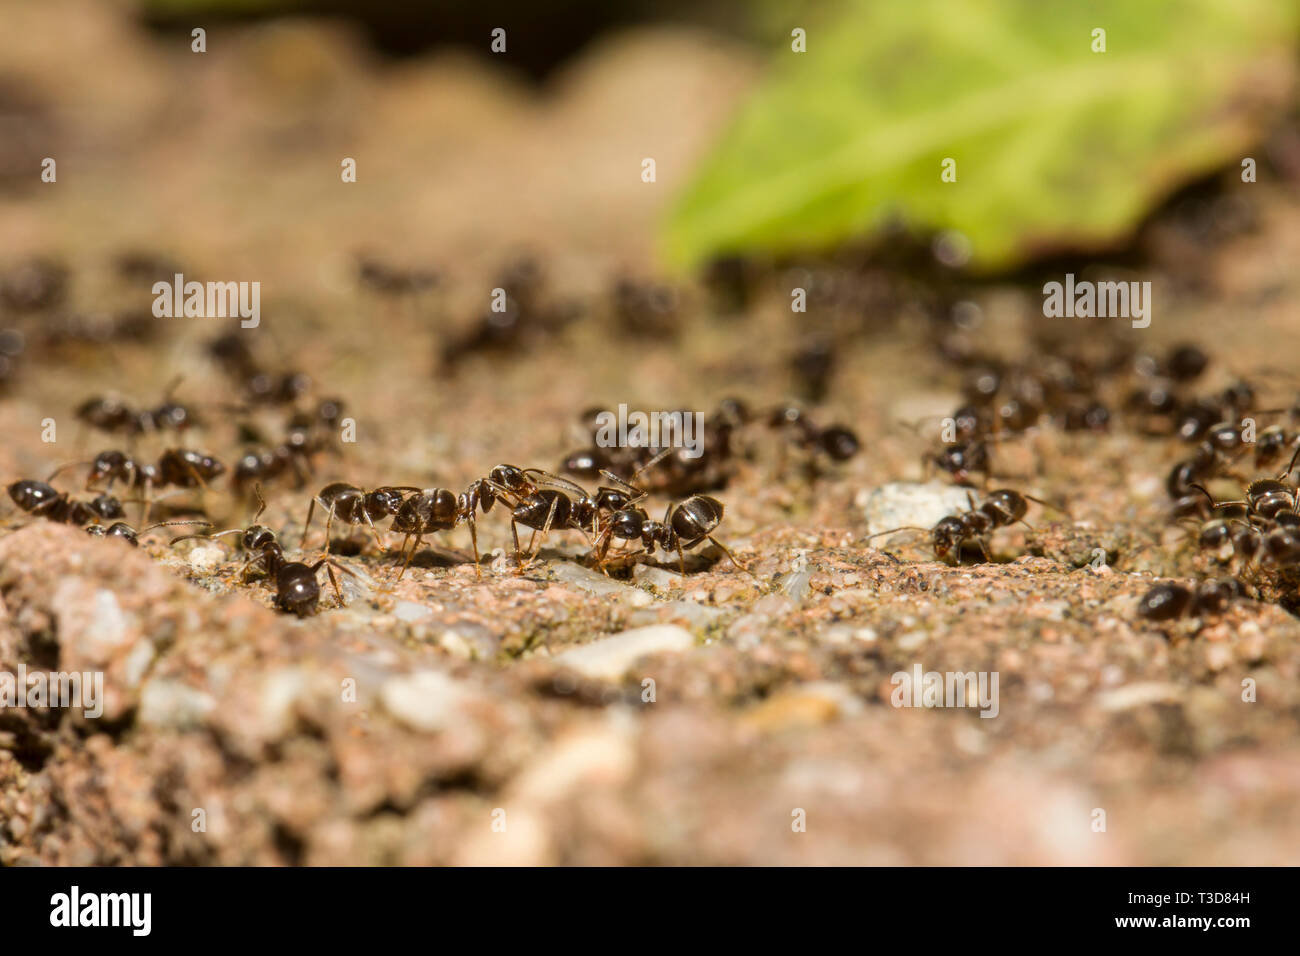 Ameisen, Formicidae, hormigas Foto de stock